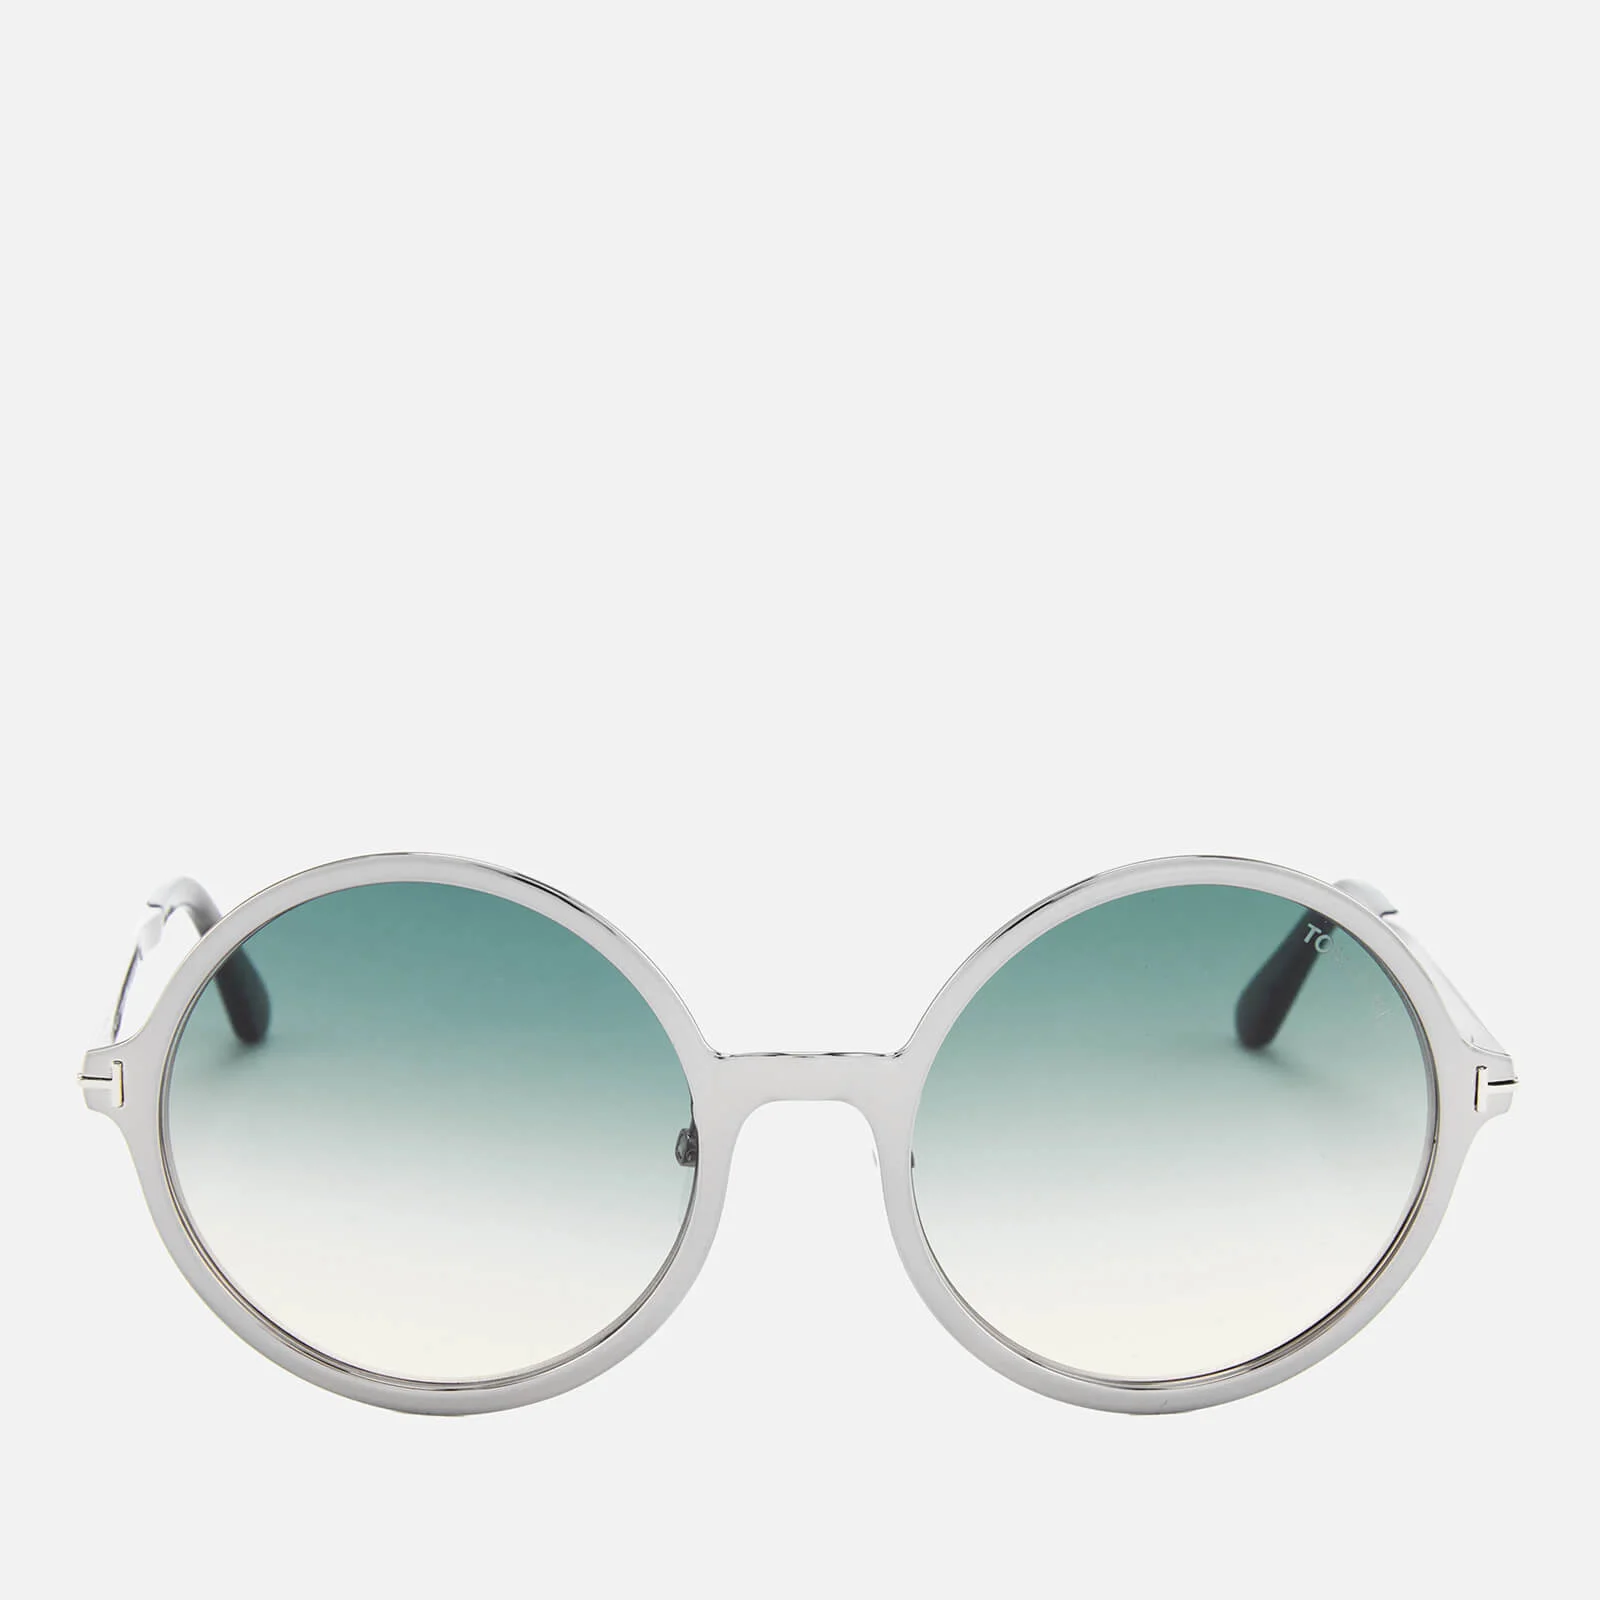 Tom Ford Women's Ava Round Frame Sunglasses - Light Ruthenium/Gradient Blue Image 1